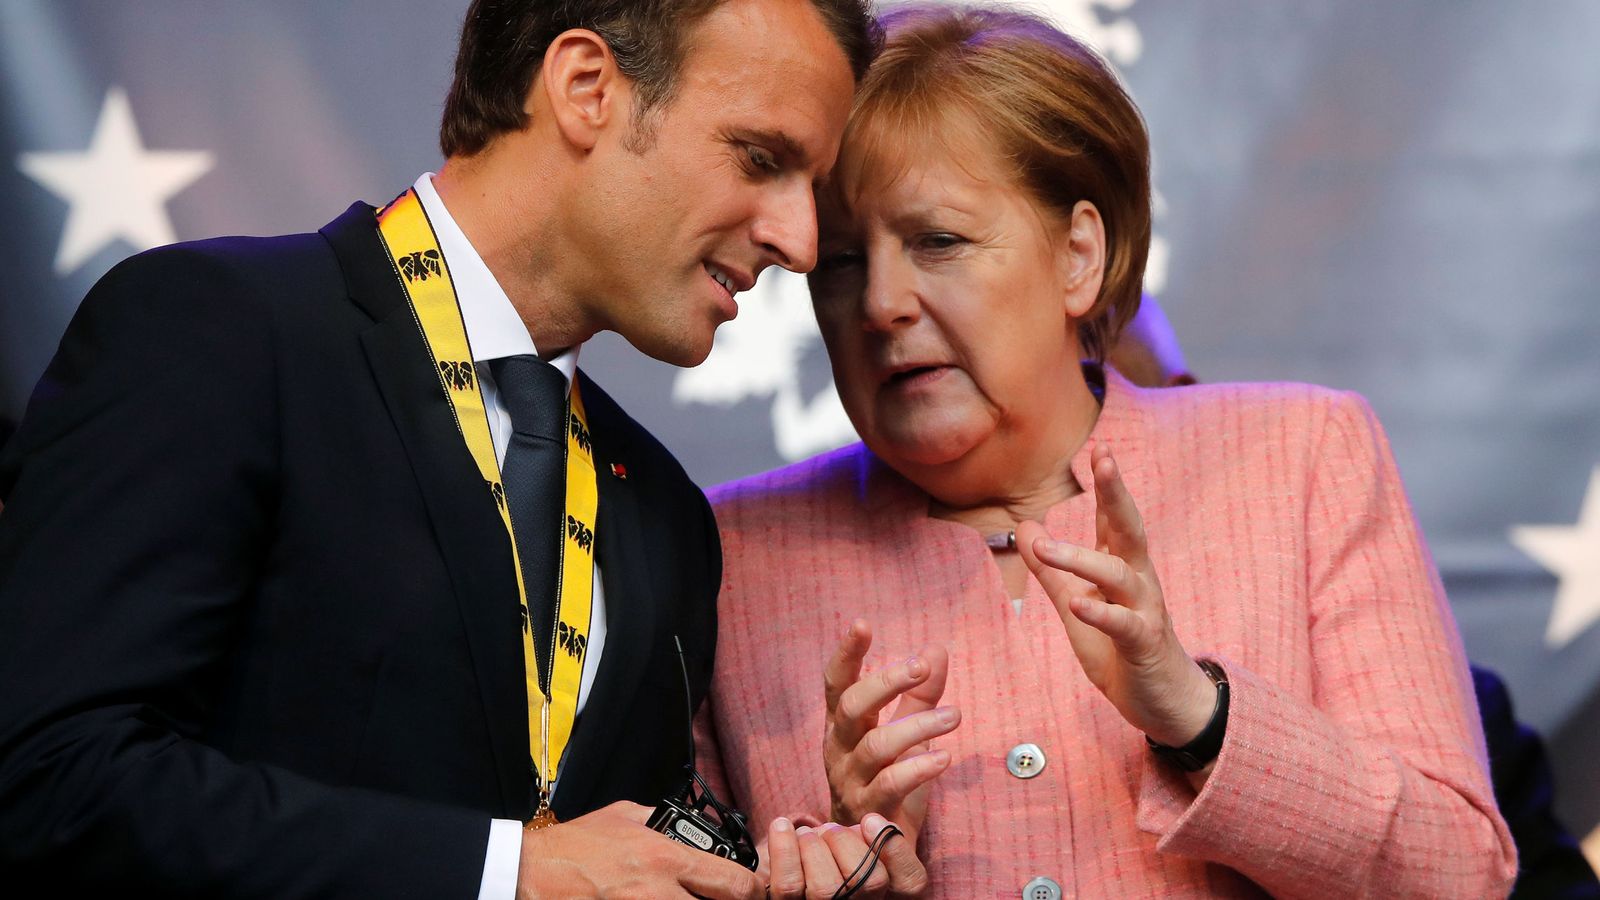 Foto: Emmanuel Macron y Angela Merkel tras recibir el Premio Carlomango por su "Visión Europea", en Aquisgrán, Alemania, el 10 de mayo de 2018. (Reuters)